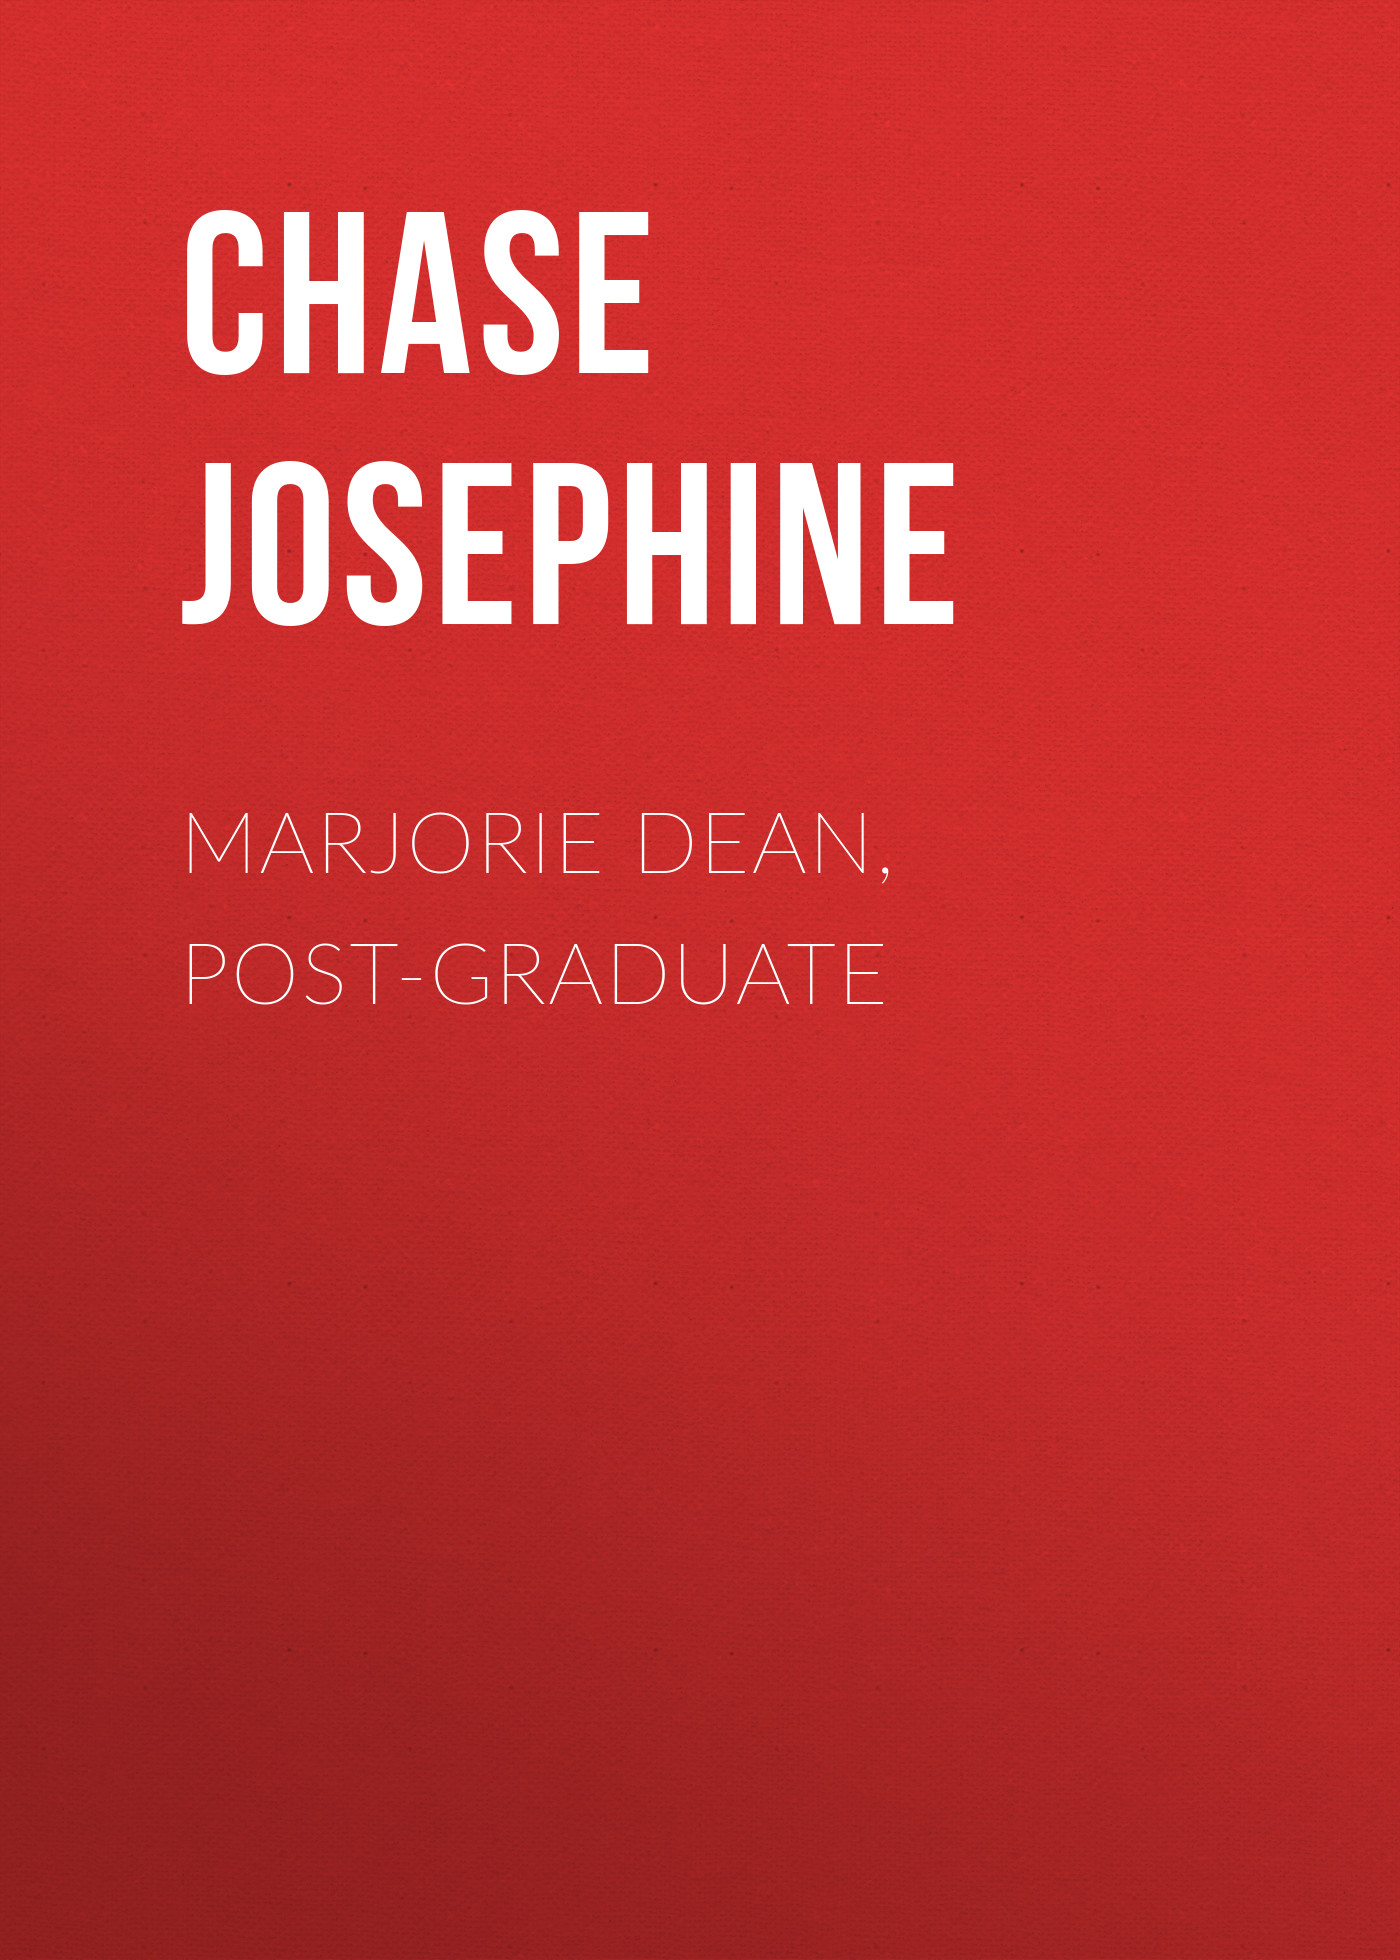 Книга Marjorie Dean, Post-Graduate из серии , созданная Chase Josephine, может относится к жанру Зарубежная классика. Стоимость электронной книги Marjorie Dean, Post-Graduate с идентификатором 23166987 составляет 5.99 руб.